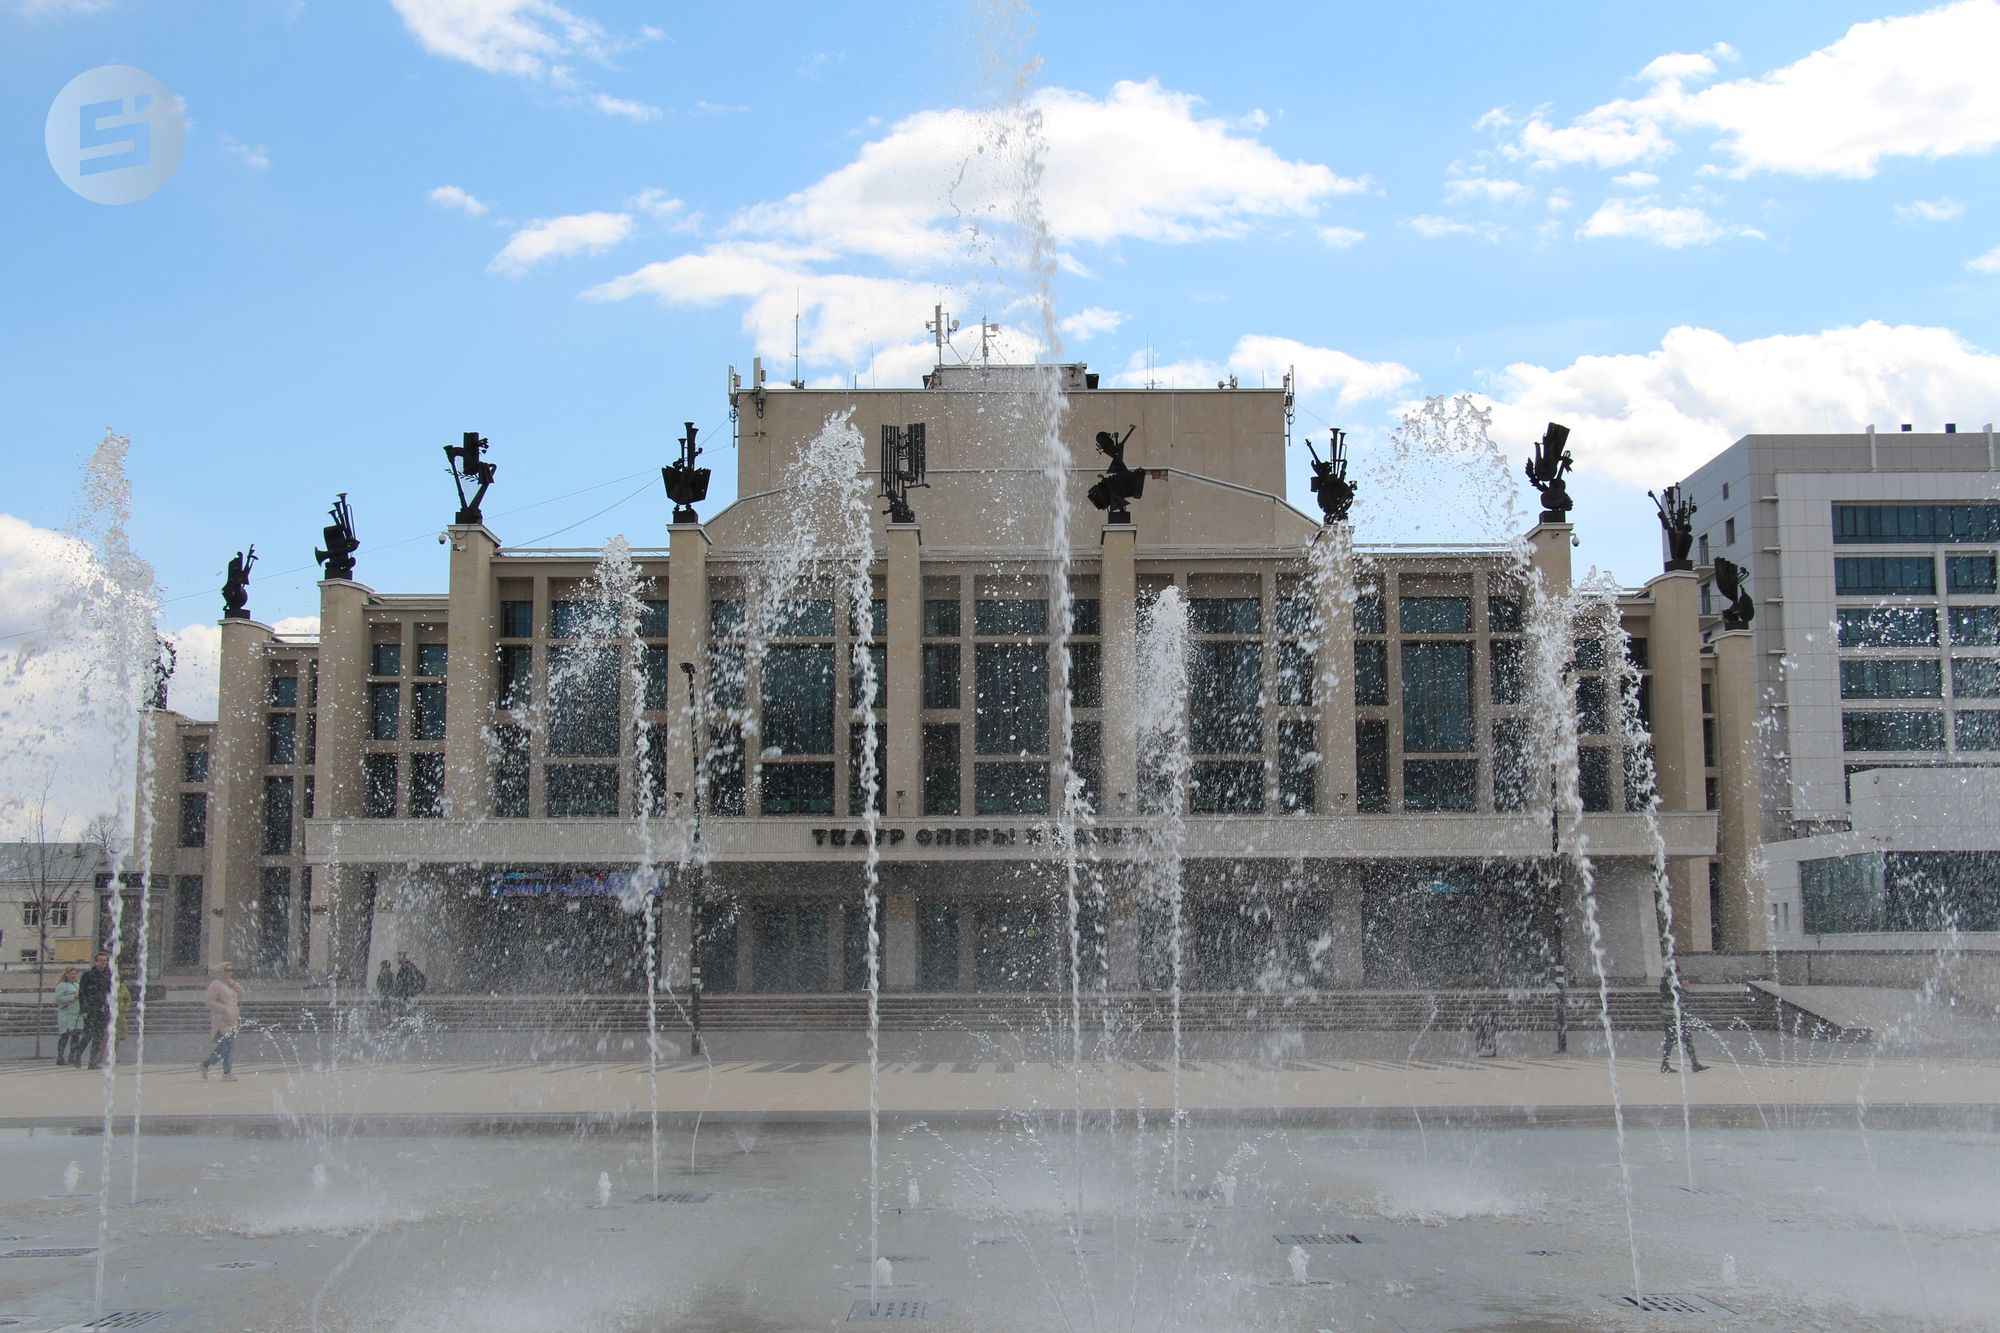 

Светомузыкальный фонтан на Центральной площади Ижевска могут включить в майские праздники

